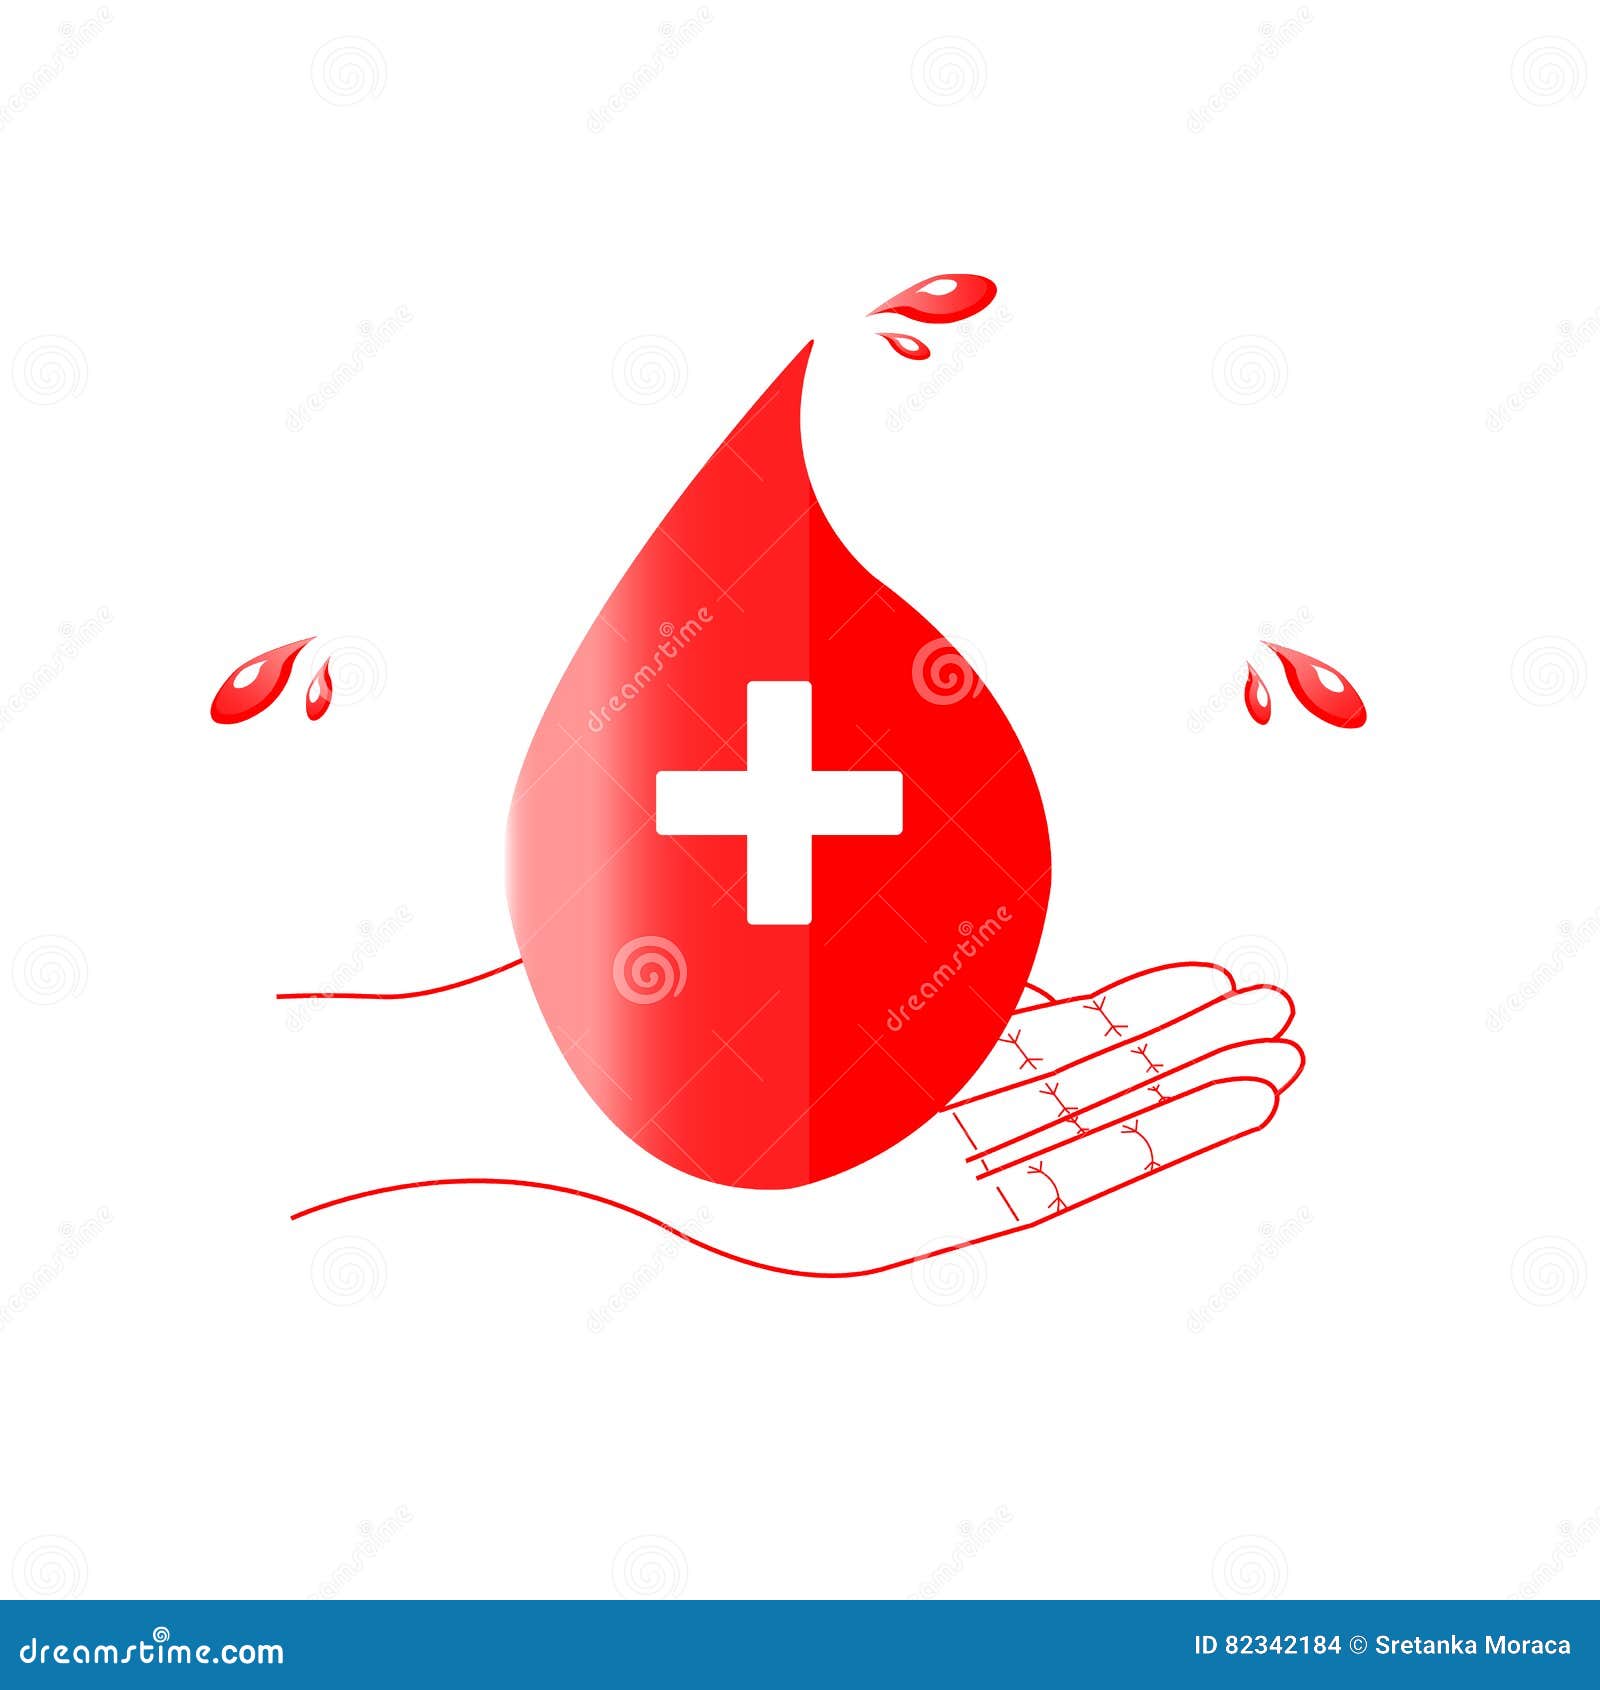 Мир донора. Эмблема донорство в мире. Армия спасения кровь и огонь значок.